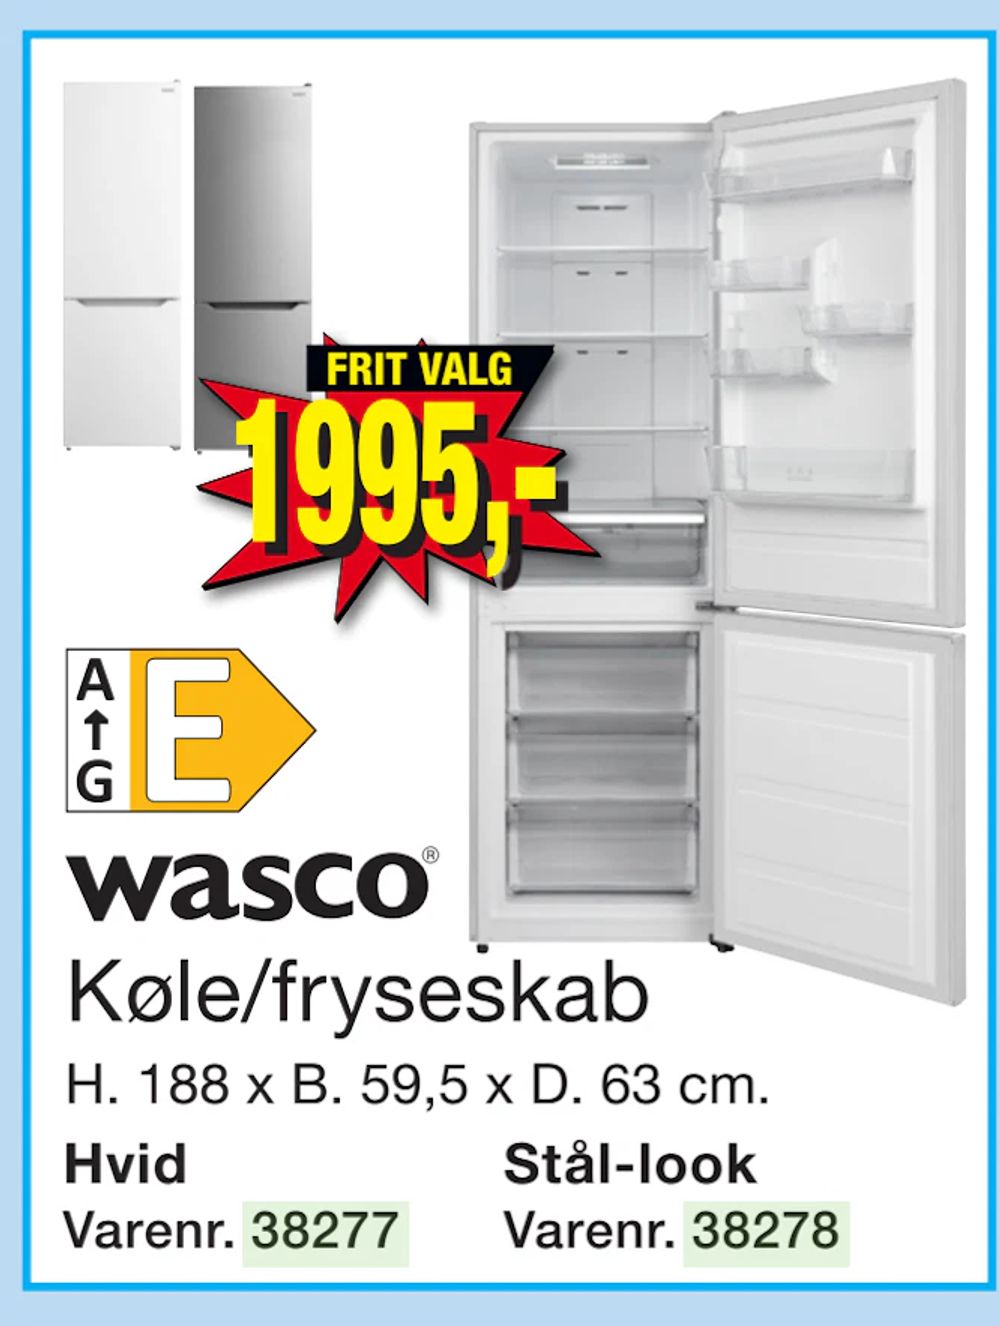 Tilbud på Køle/fryseskab fra Harald Nyborg til 1.995 kr.